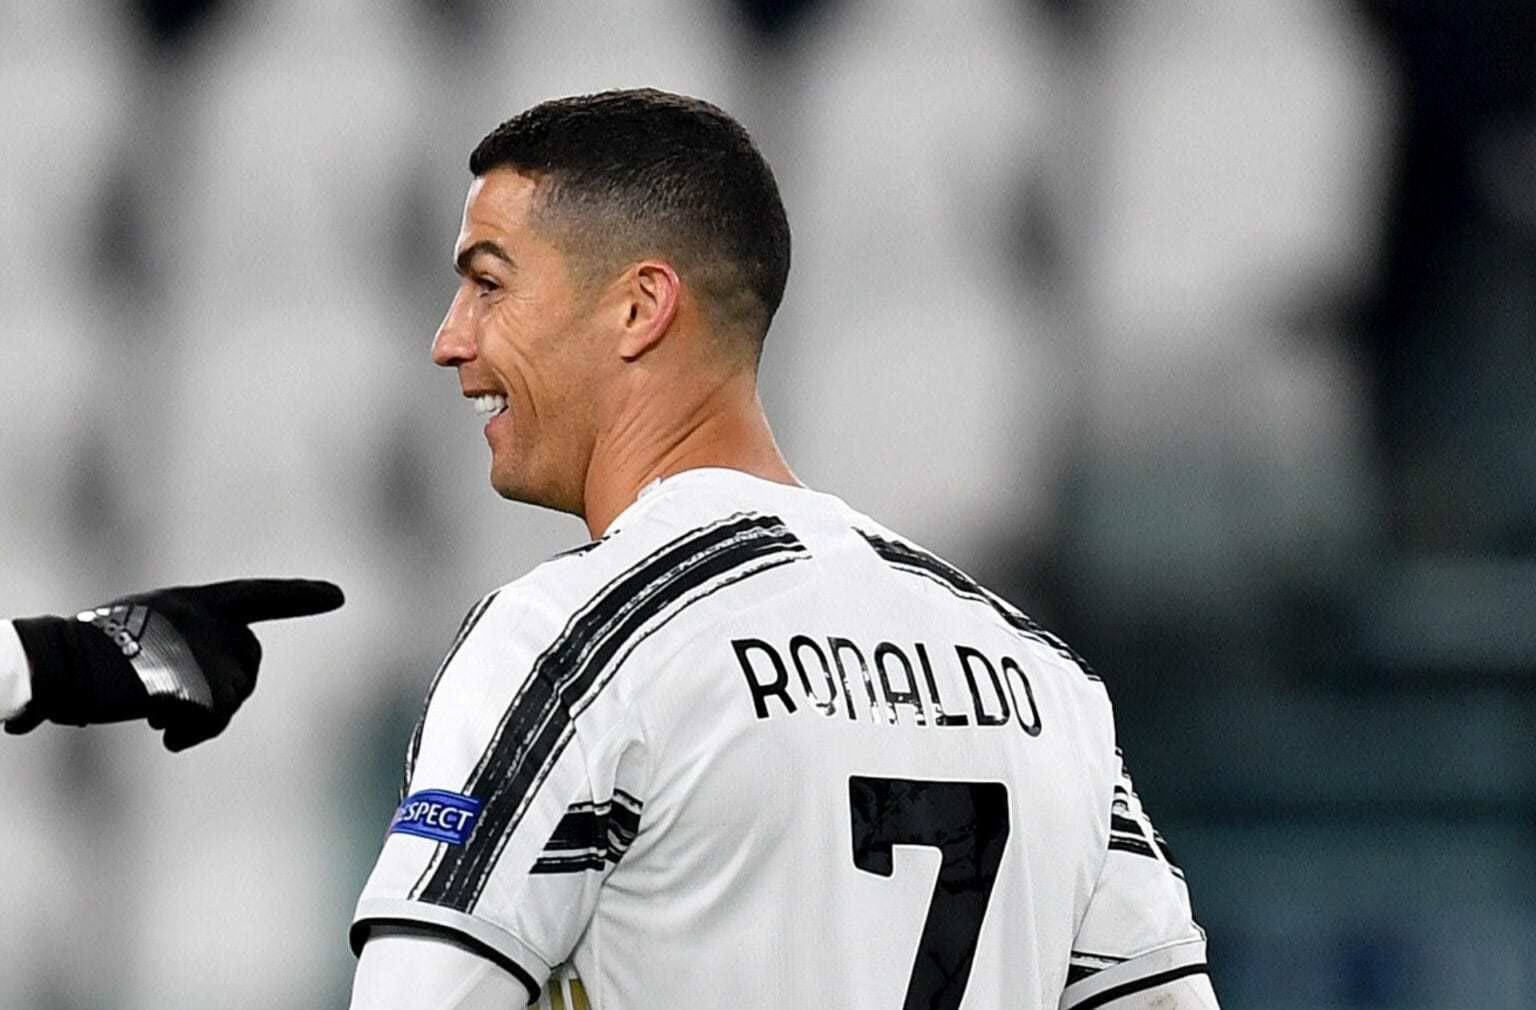 Sau khi chạm mốc 750 bàn, Ronaldo đặt mục tiêu mới: 800 bàn